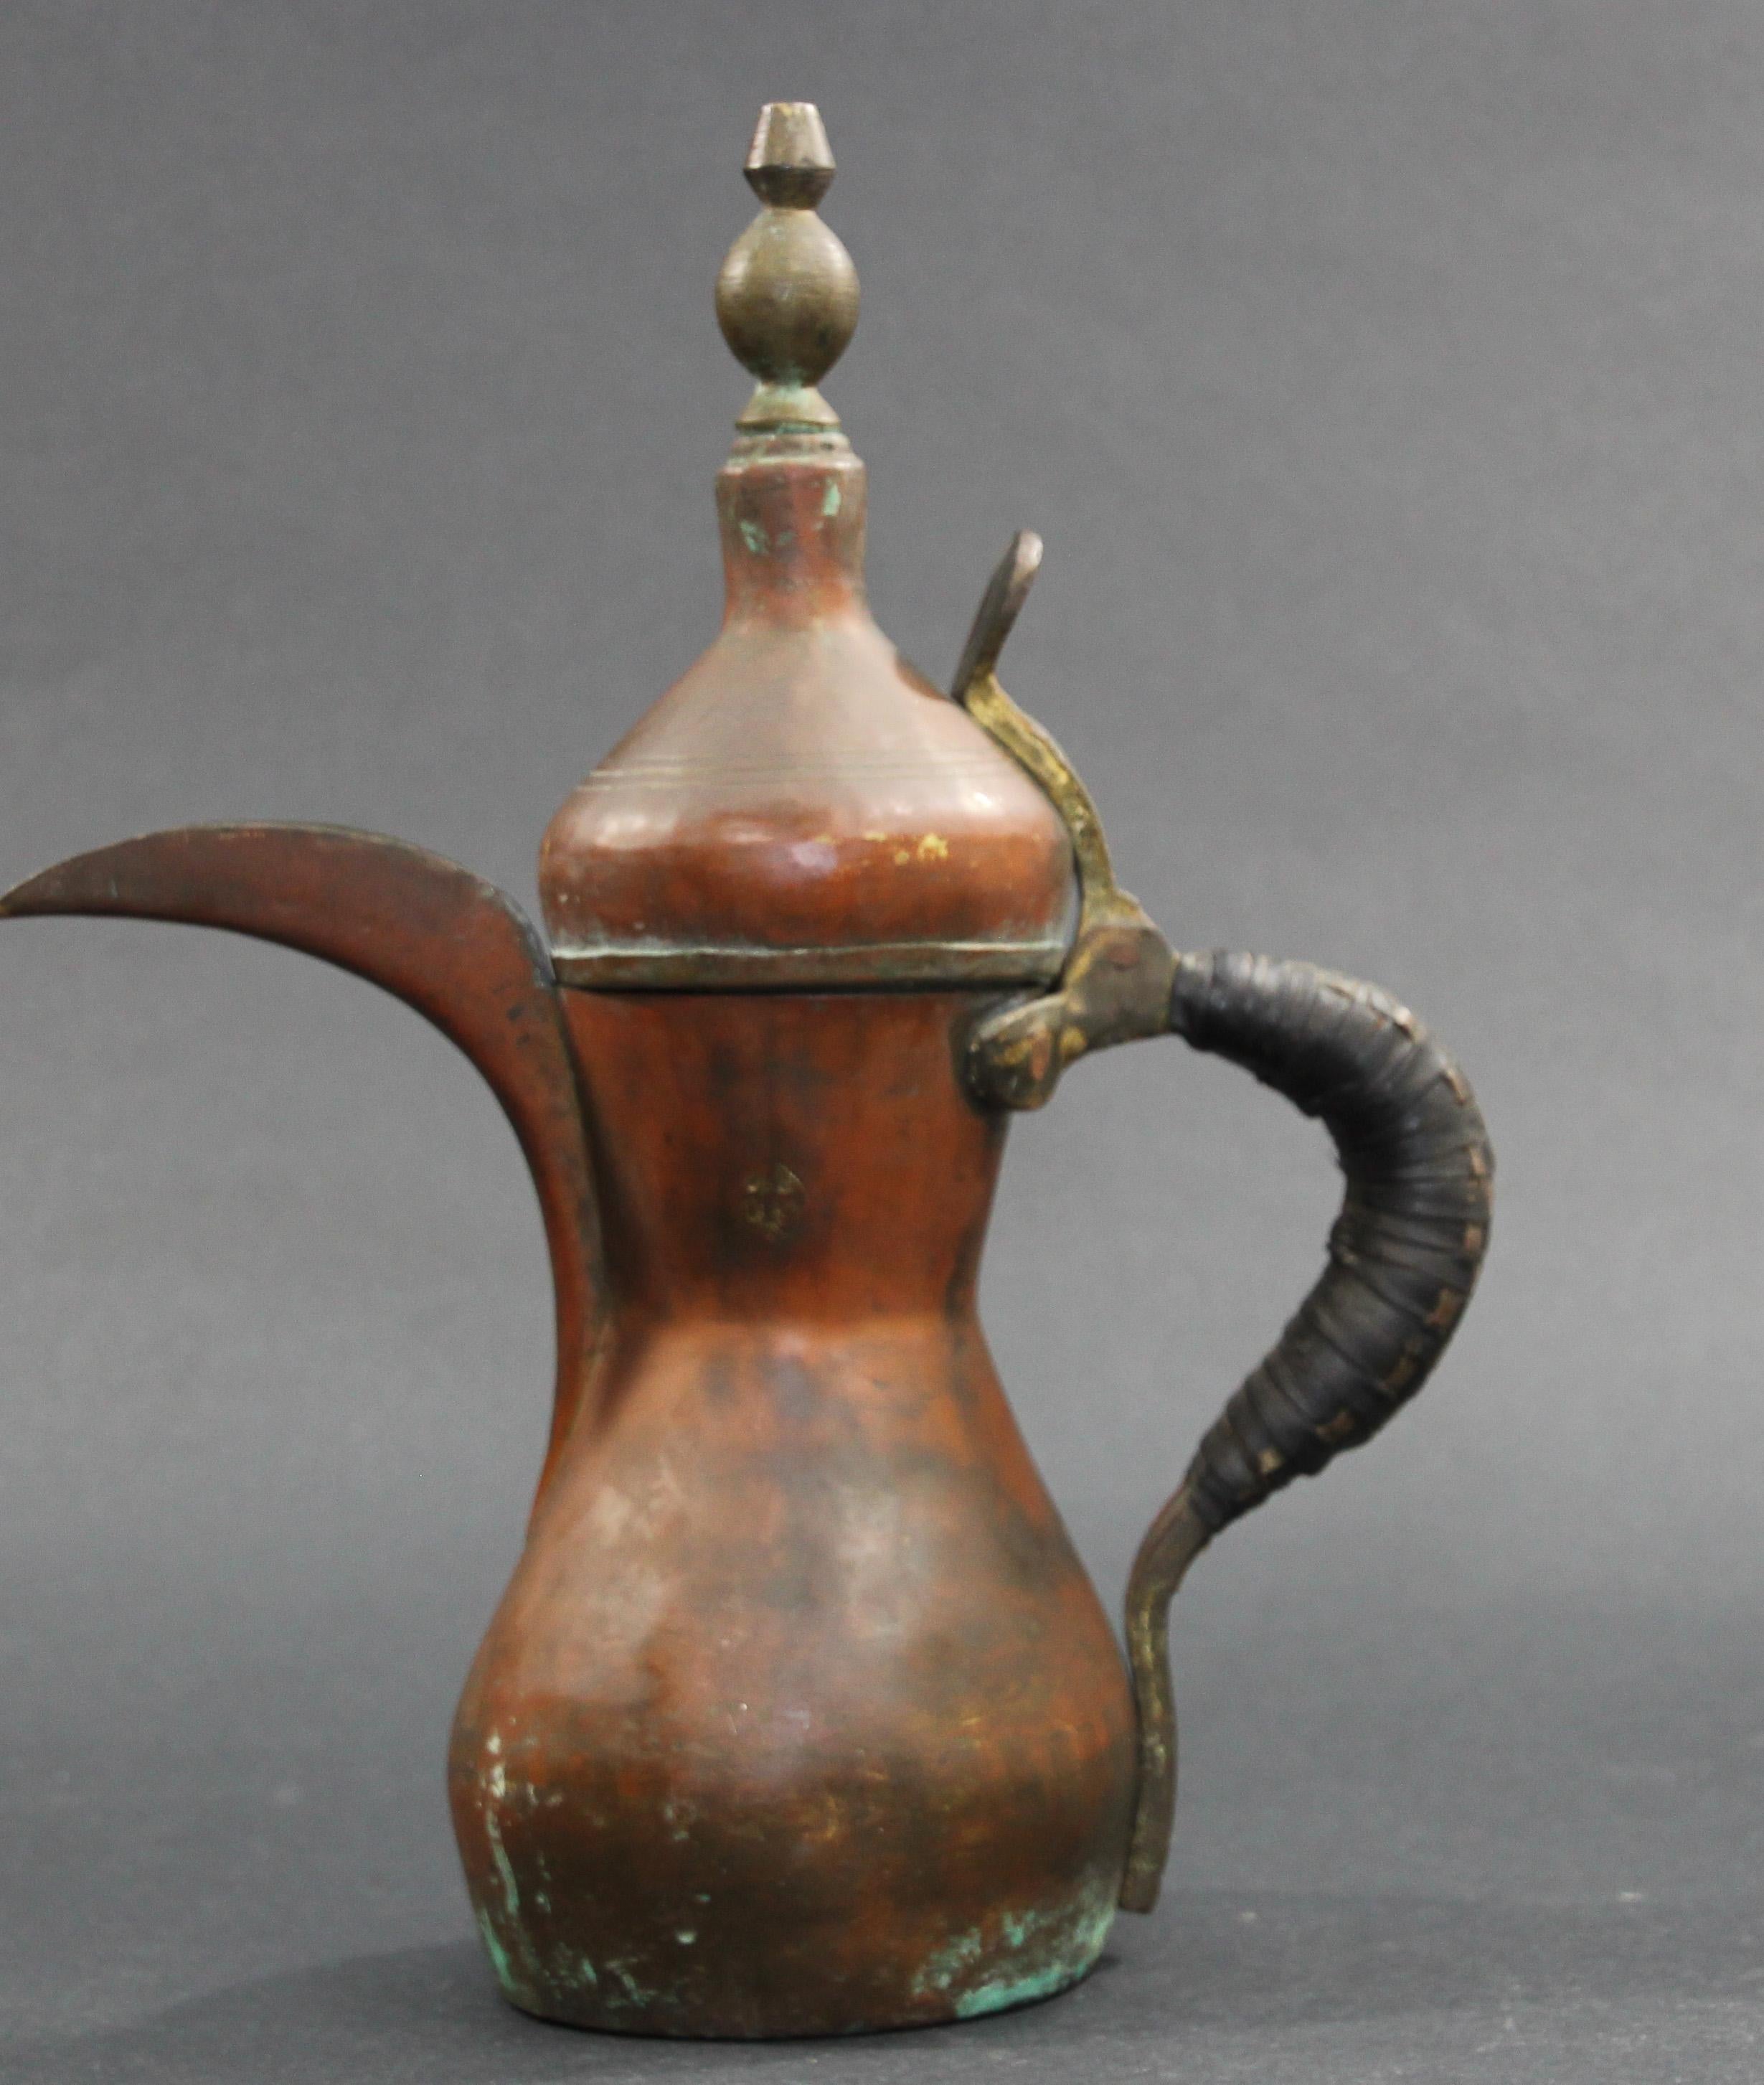 traditionelle arabische Dallah-Kaffeekanne aus verzinntem Kupfer und Messing aus dem 19. Jahrhundert. 
Maurische Kaffeekanne aus handgehämmertem Kupfer mit vernieteter Messingoberfläche und einem sehr großen Ausguss. 
Der Griff ist mit Leder